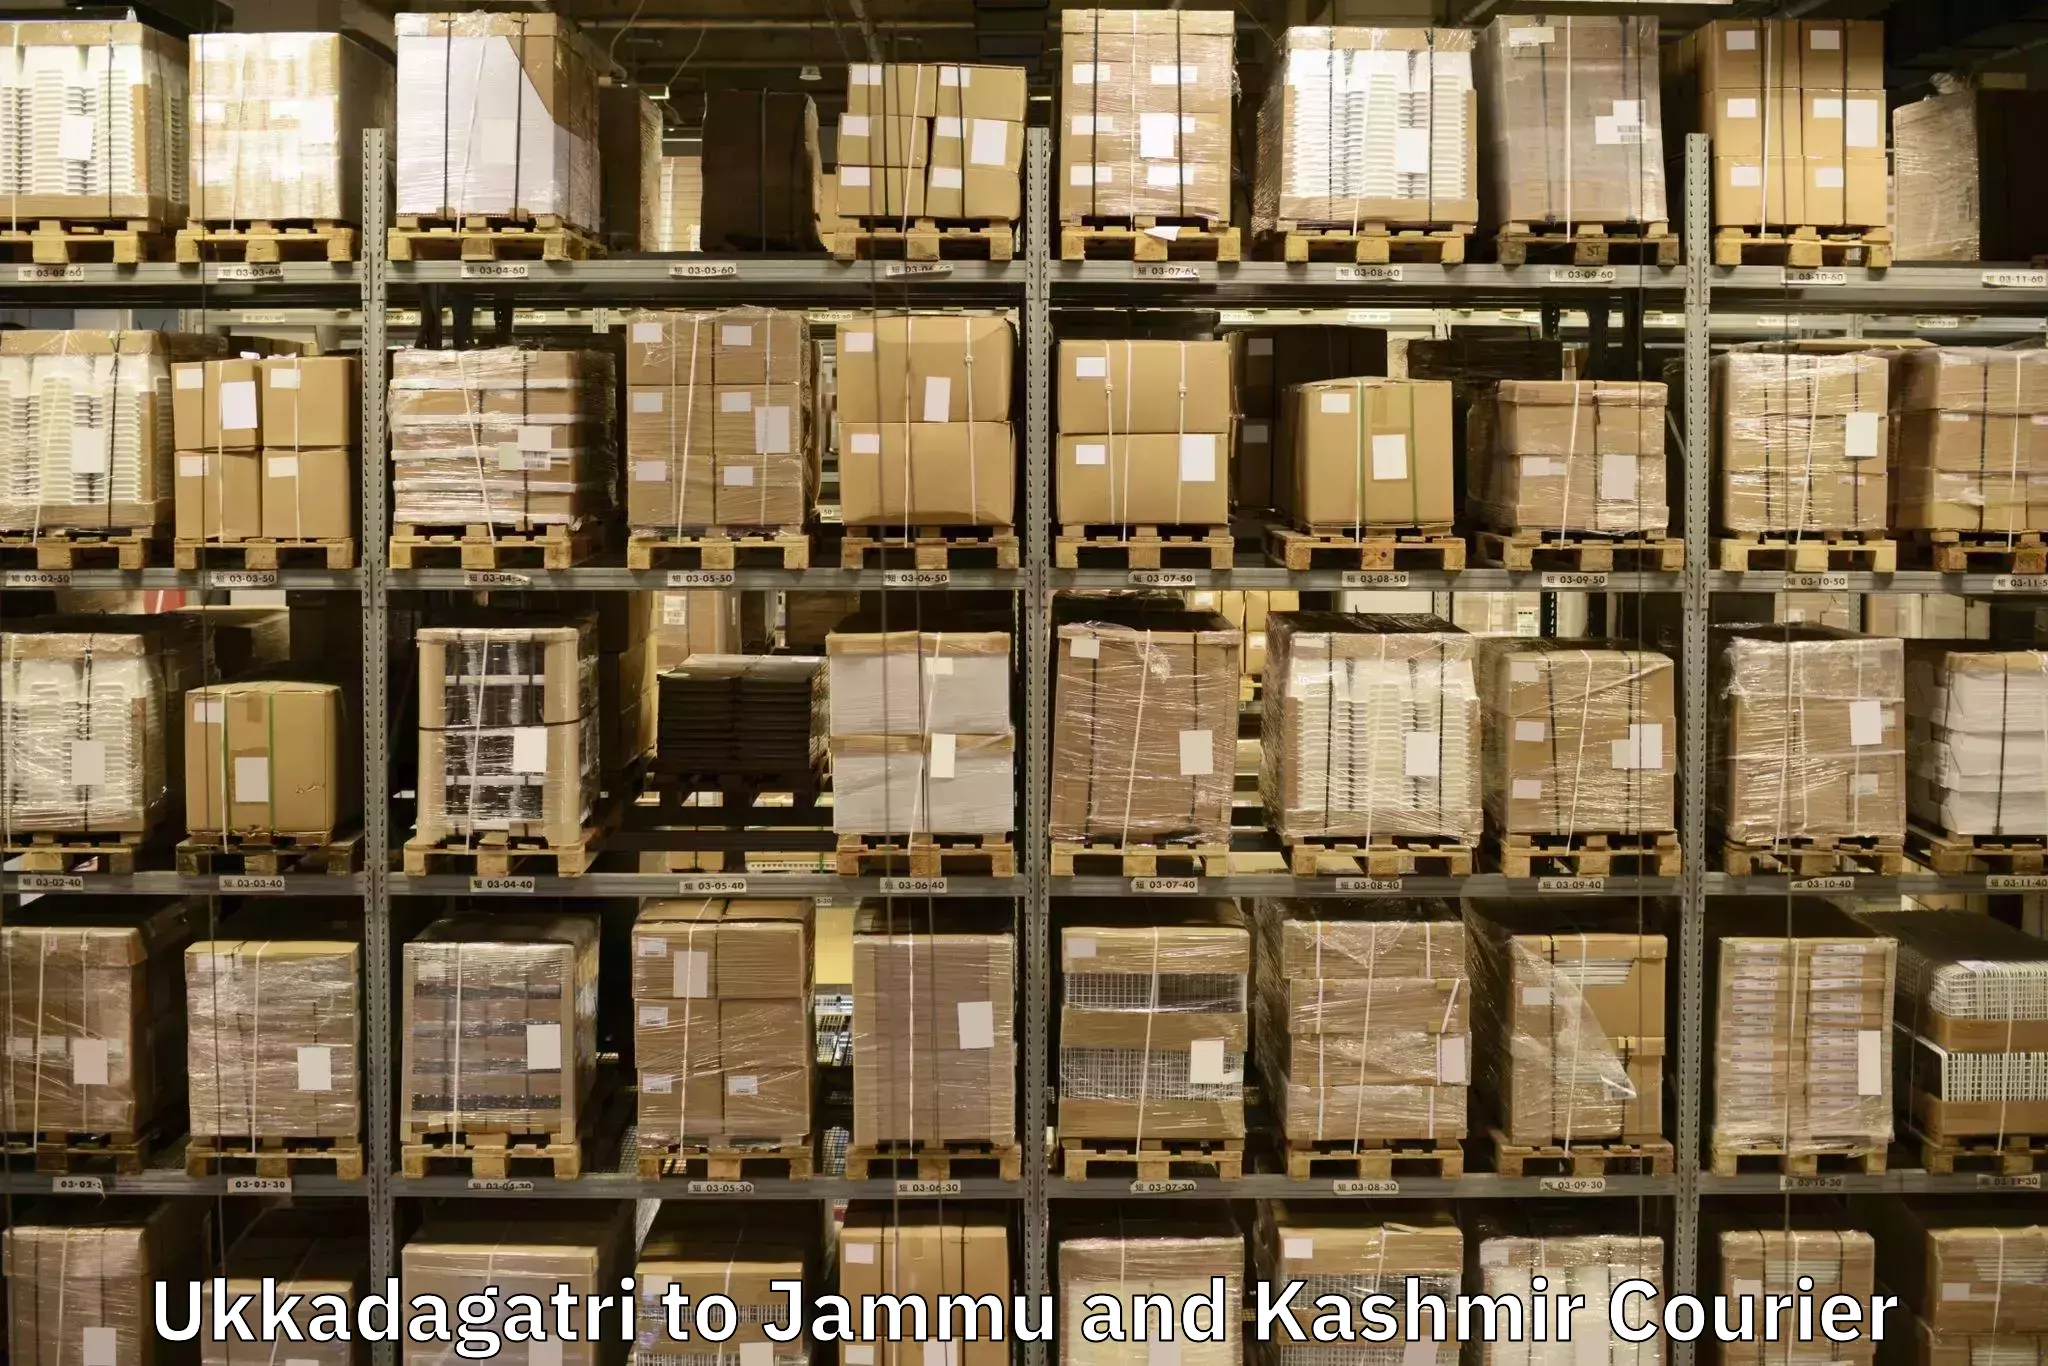 Furniture transport company Ukkadagatri to Jammu and Kashmir